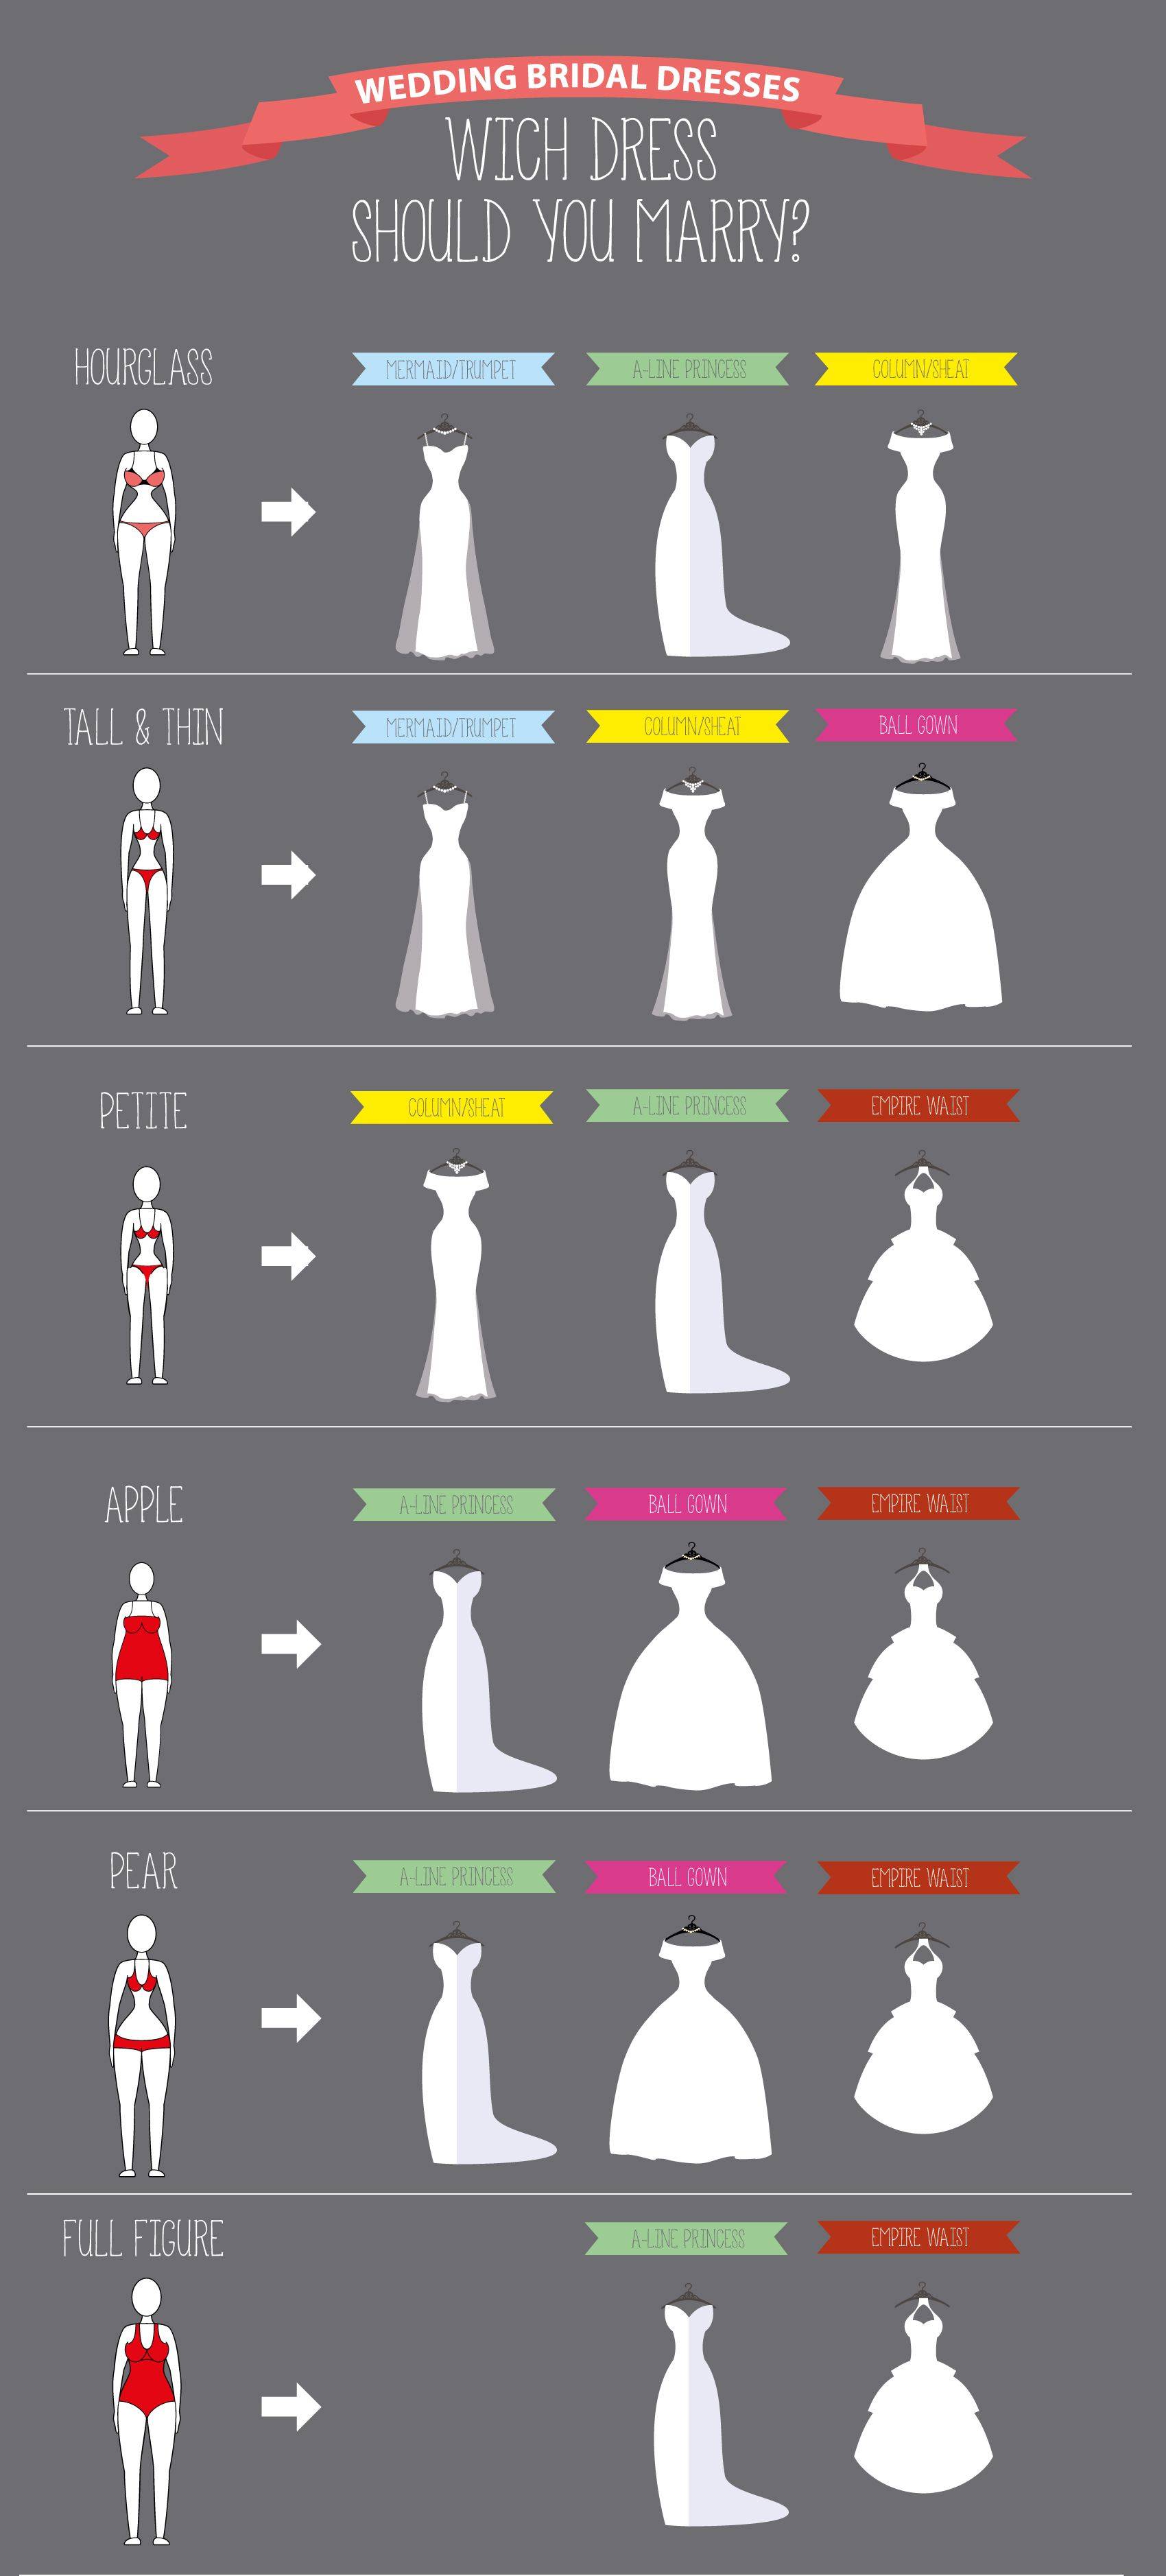 Как правильно выбрать свадебное платье: по фигуре, сезону, возрасту